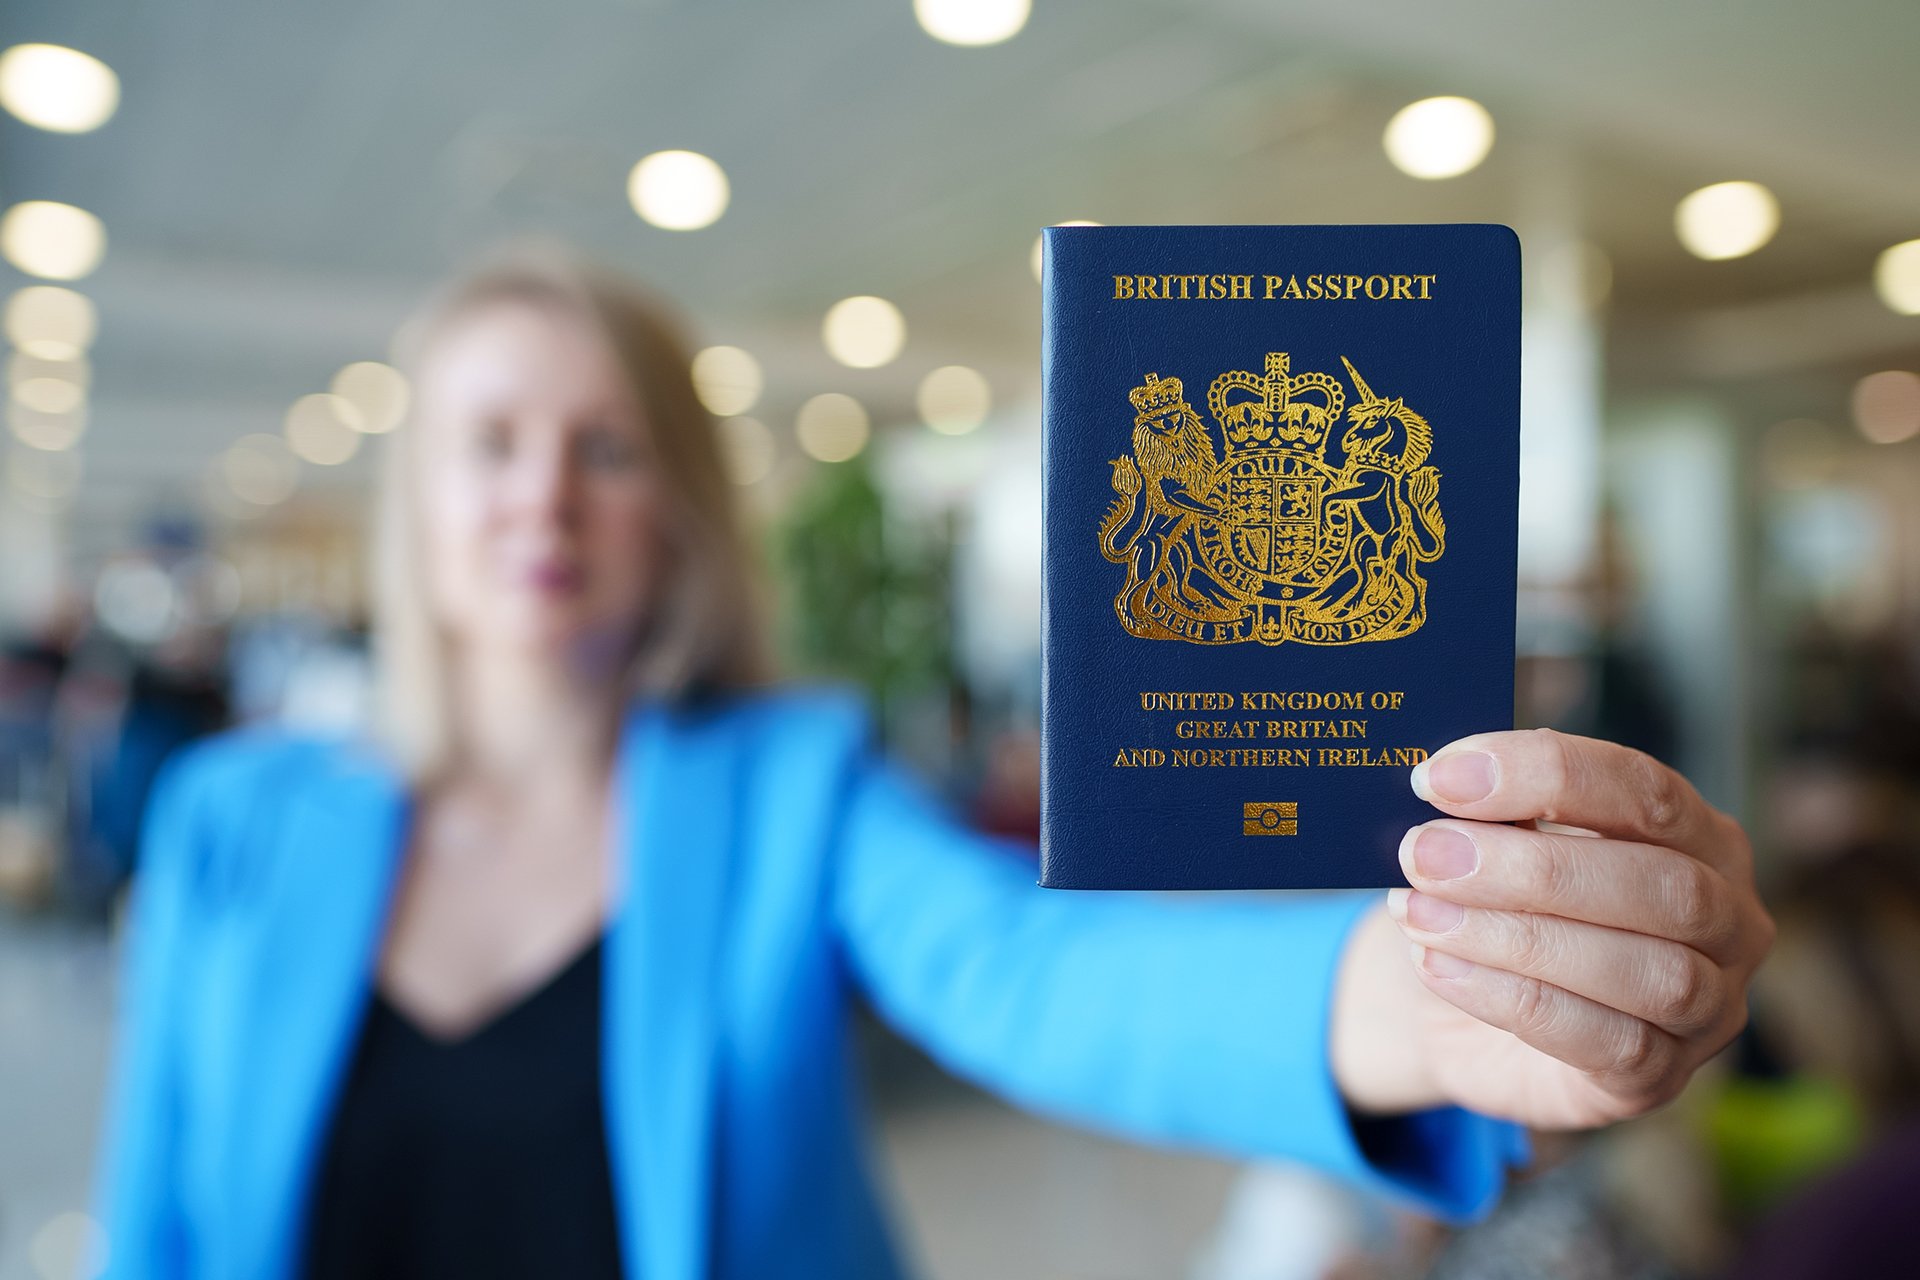 Is your passport valid?